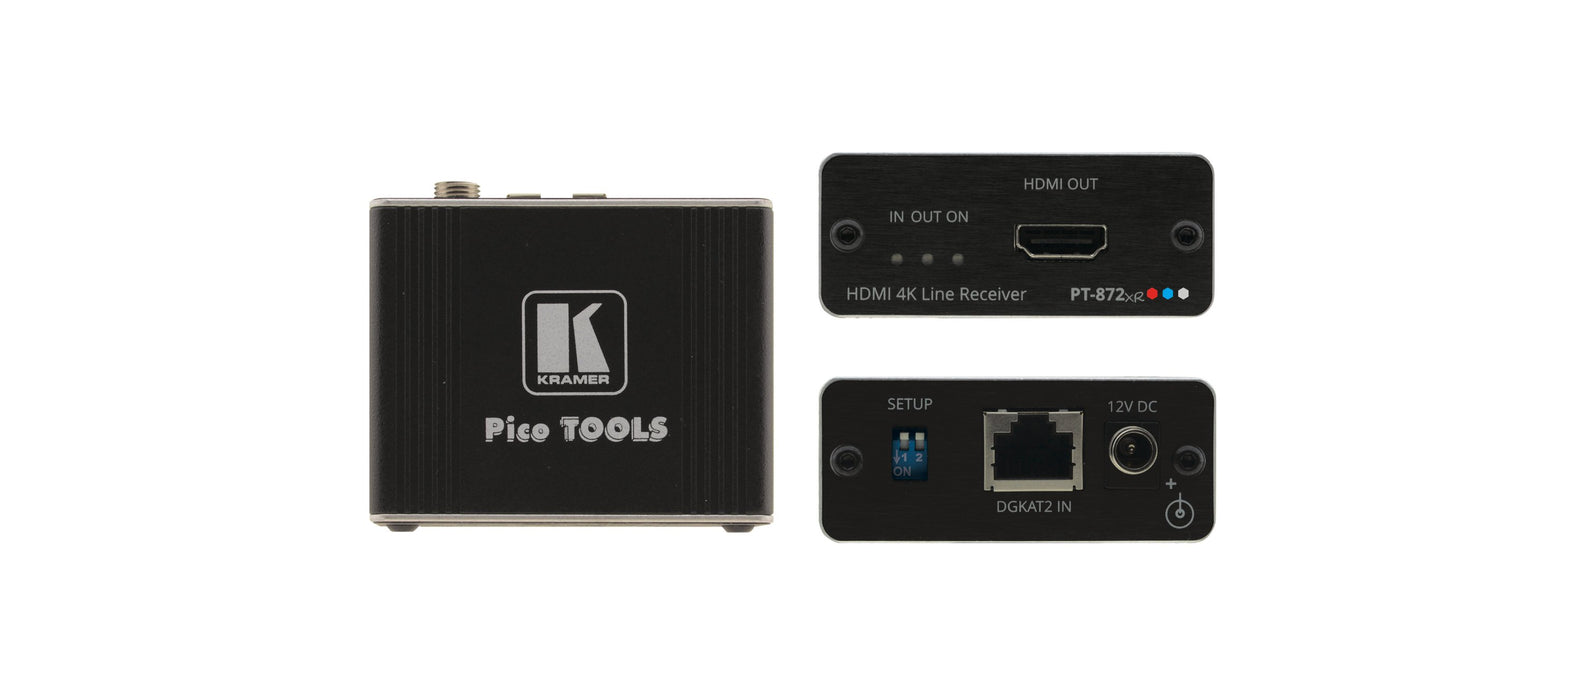 WP-871xrTransmisor de placa de pared PoC / PT-872xr Receptor PoC compacto HDMI 4K HDR